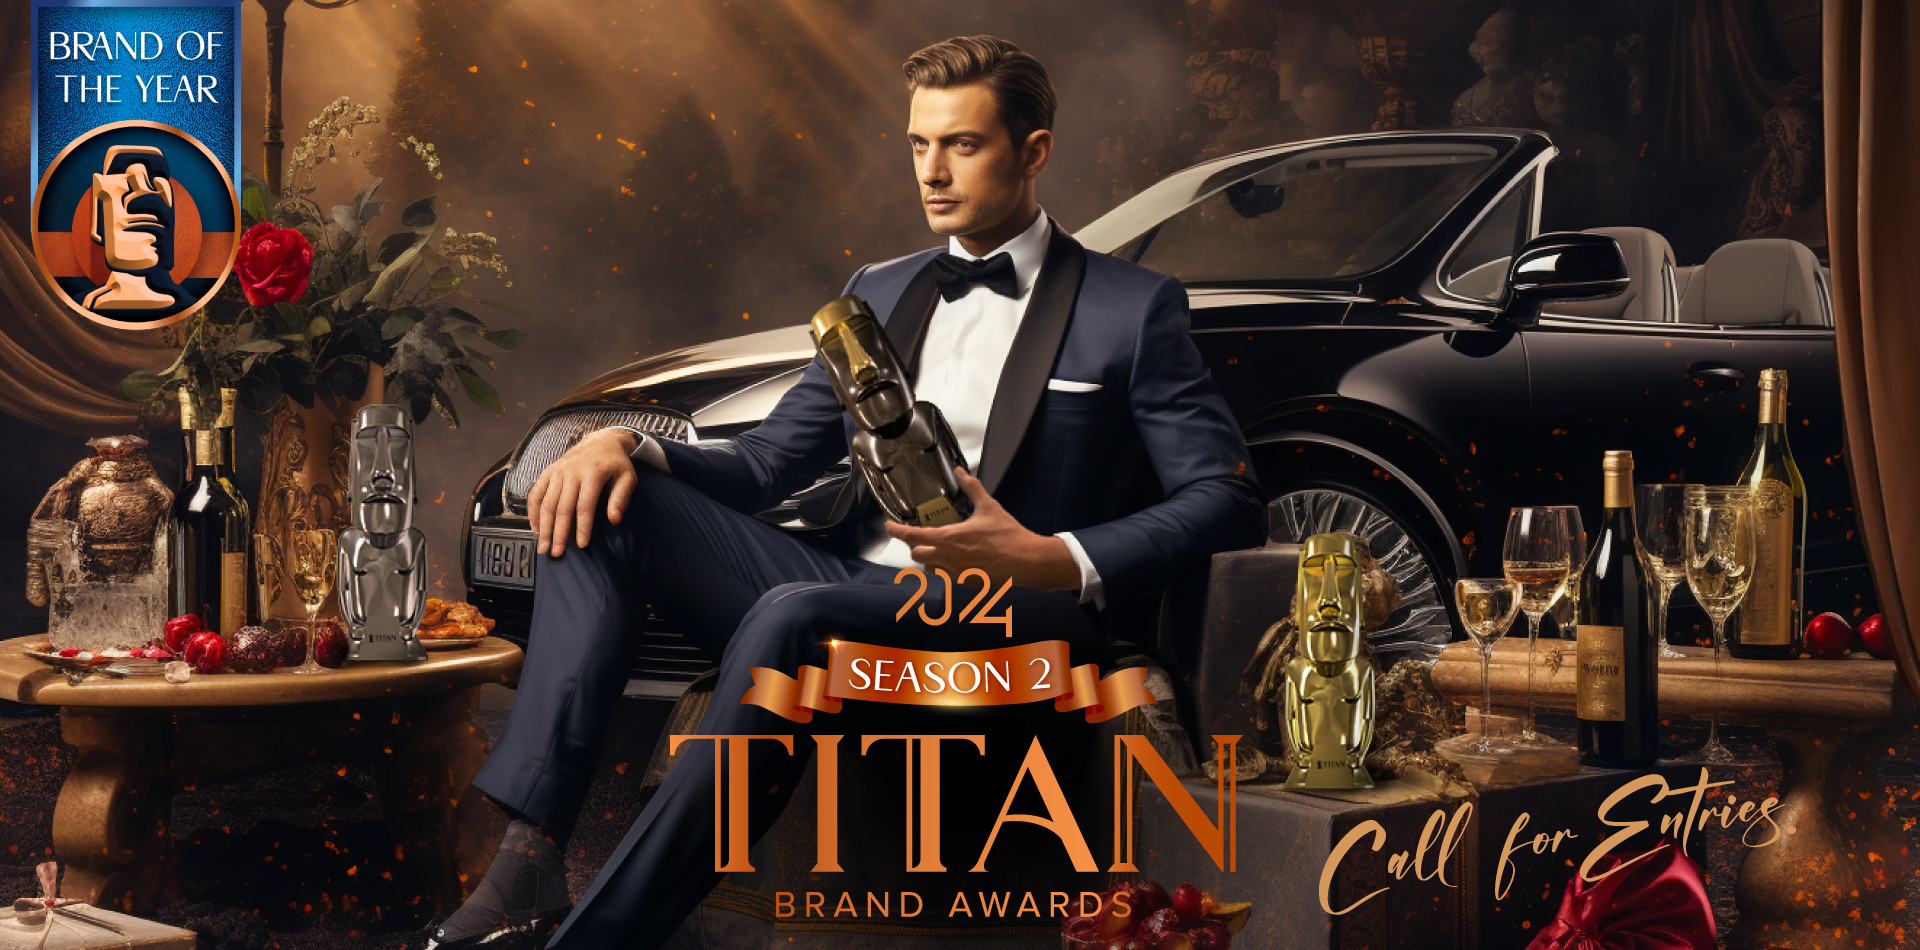 TITAN-Brand-Awards-banner-lanscape